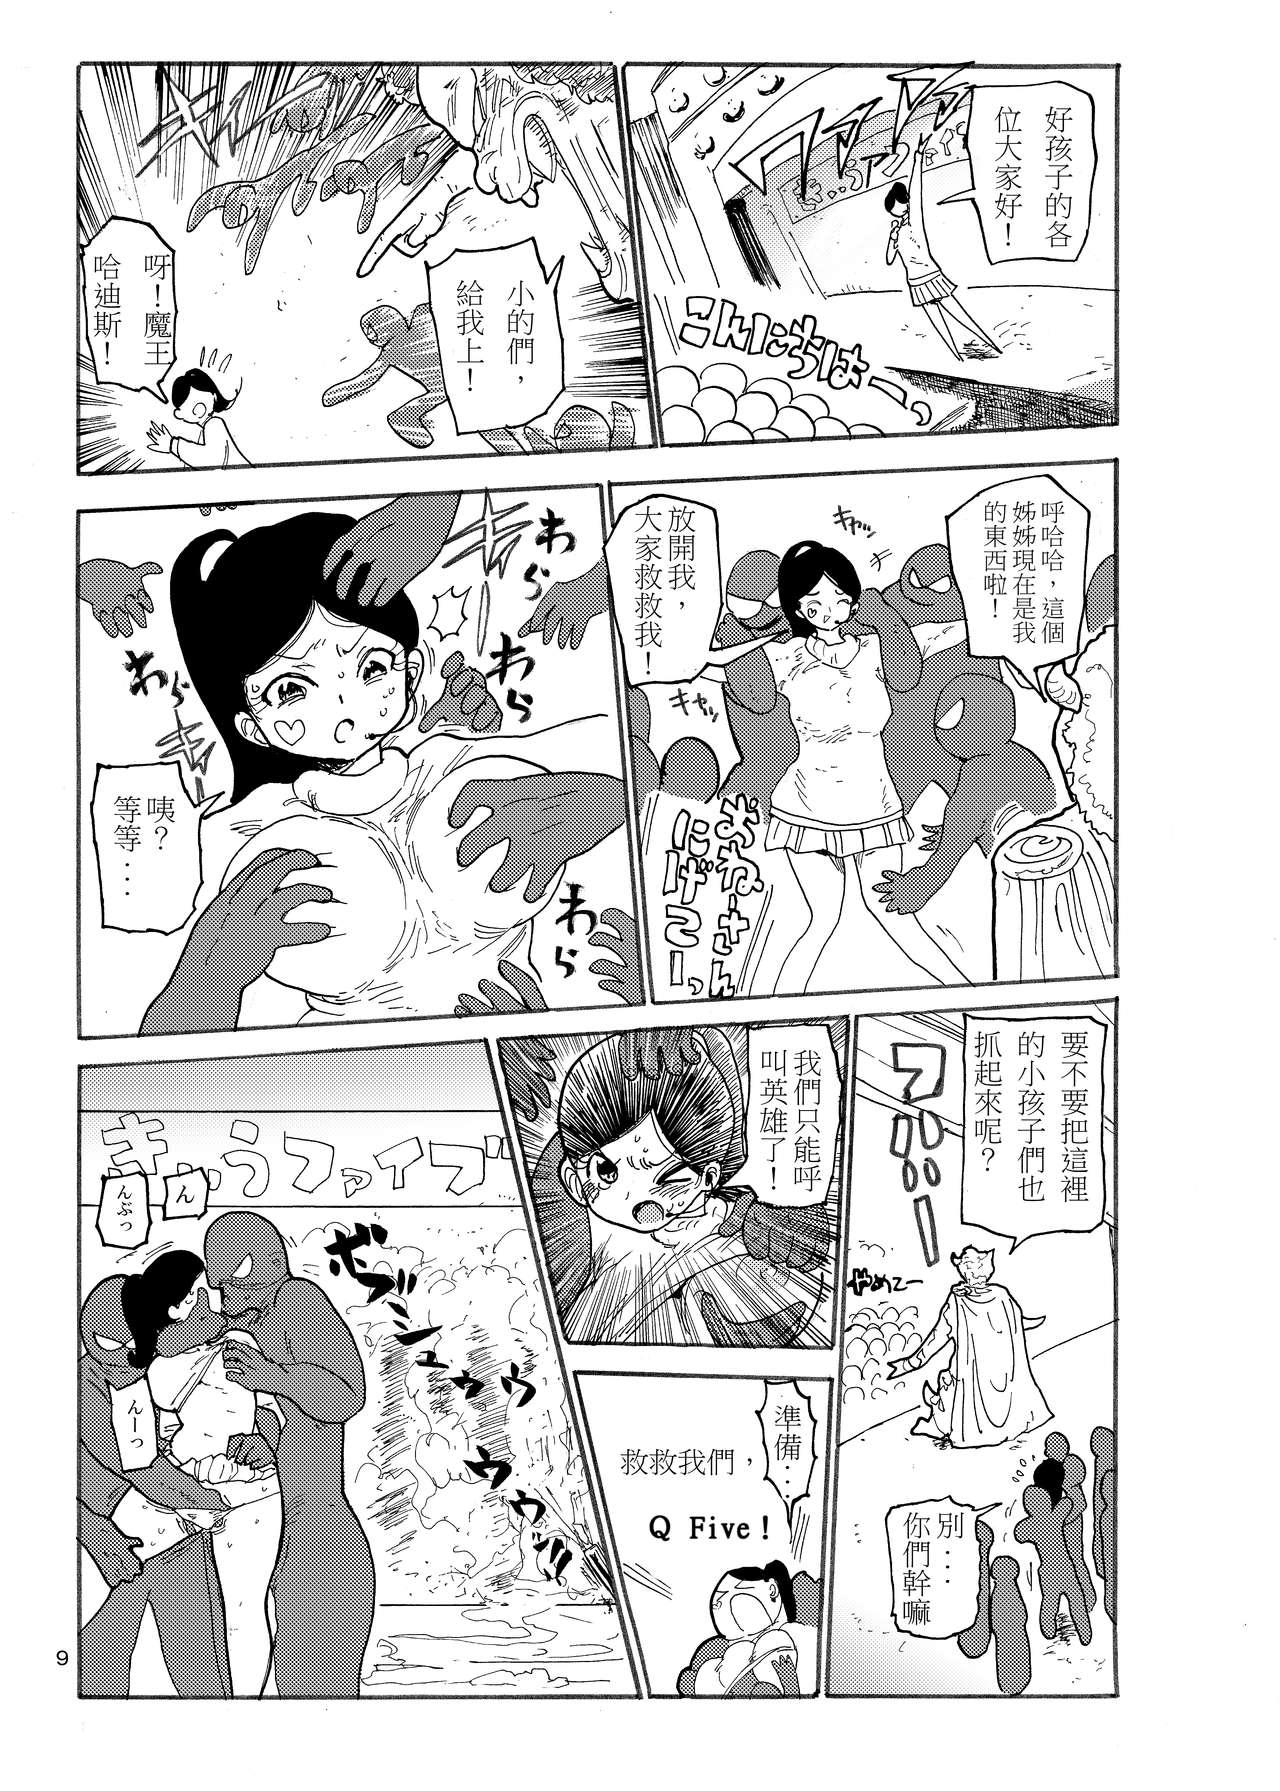 Young Tits Fuyu ni mo Nandemo Chousa Shoujo no Doujinshi ga Deta? Wakarimashita Chousa Shimasu - Original Brasileira - Page 9